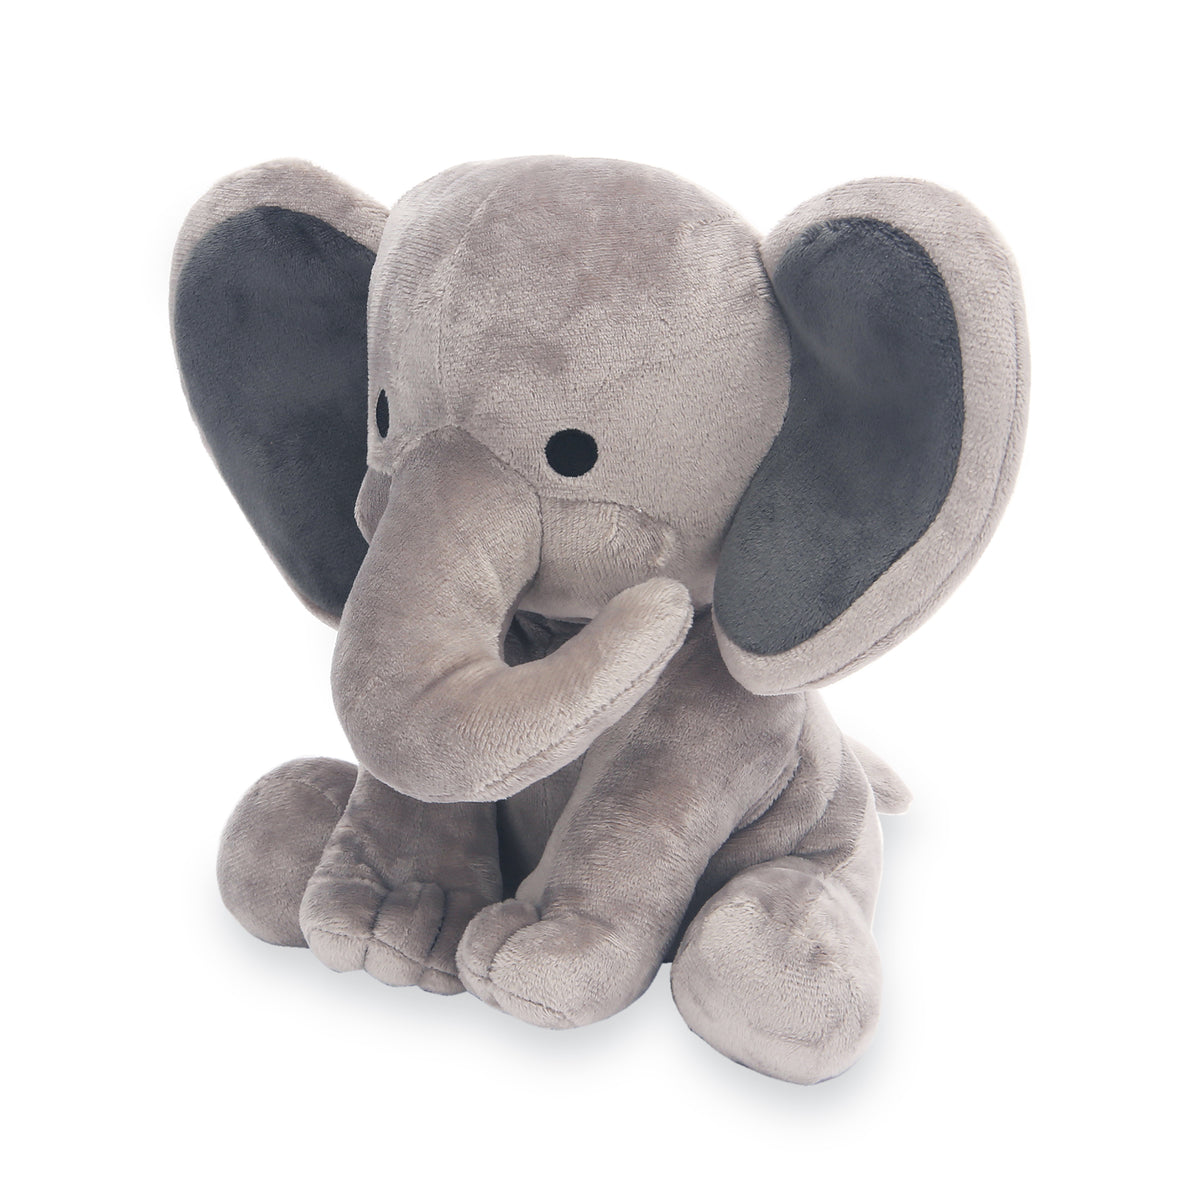 elephant plush animal